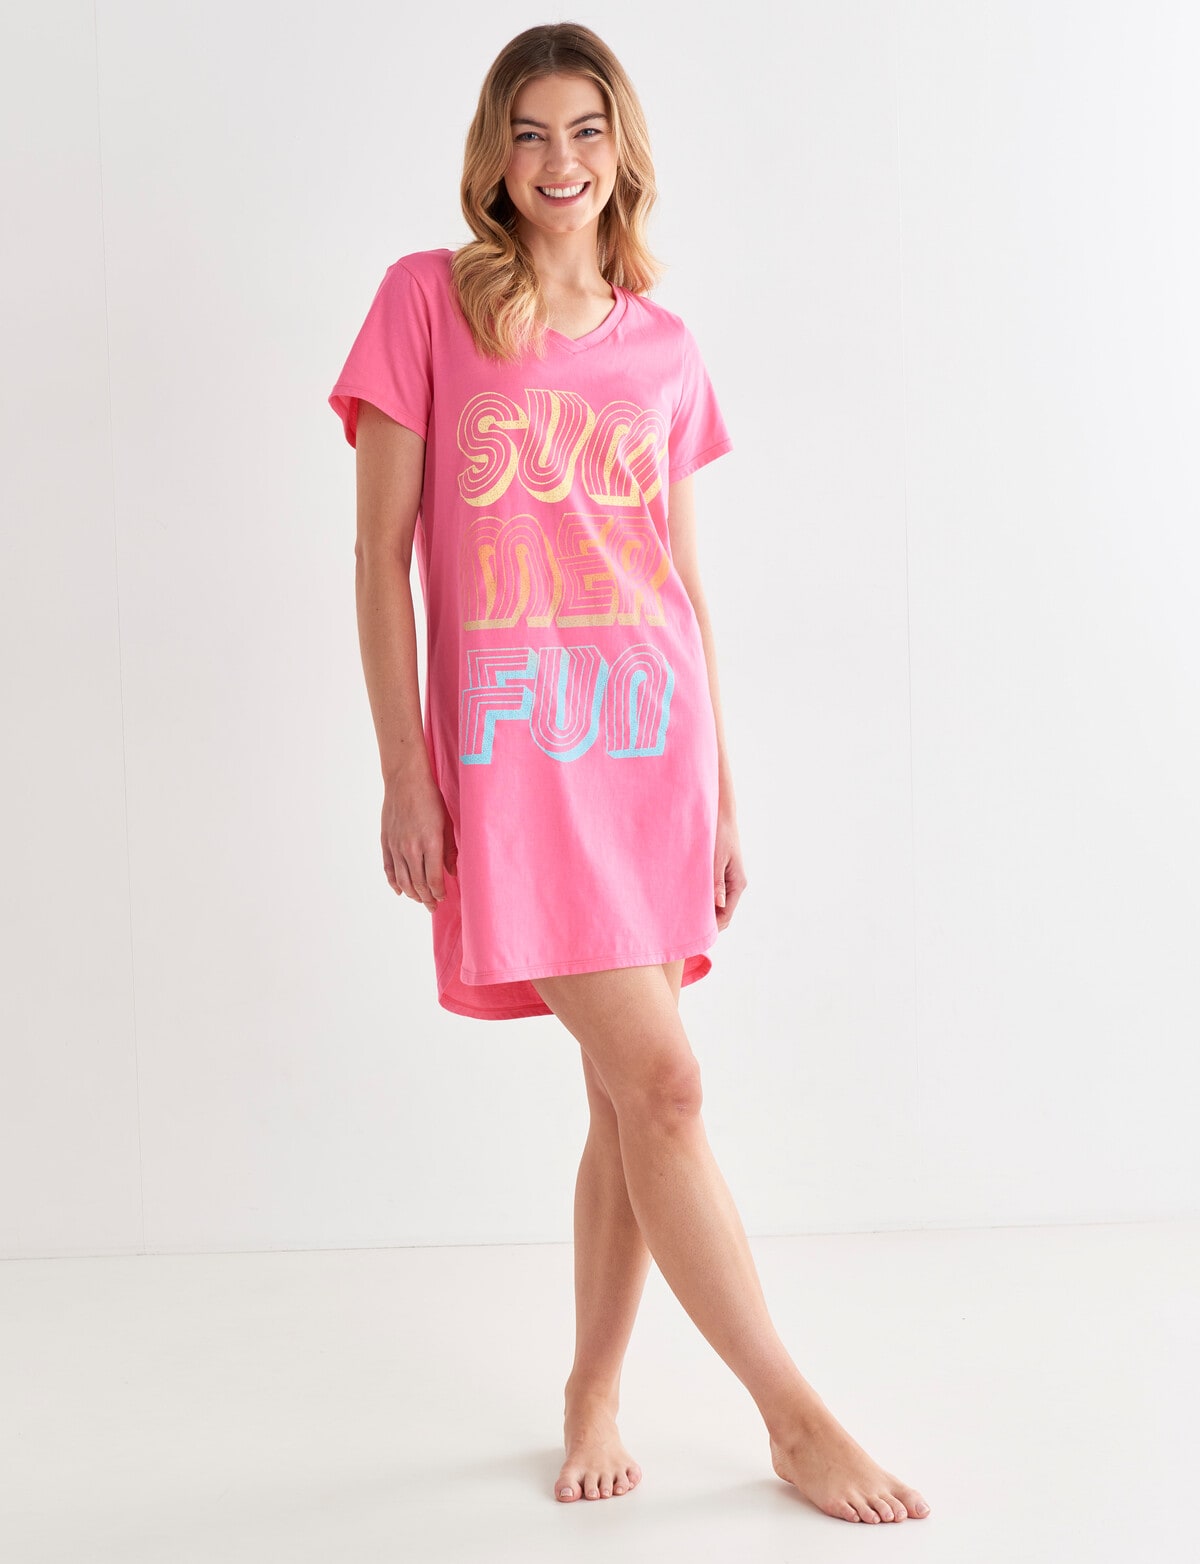 Zest Sleep Summer Fun T-shirt Nightie, Pink - Nighties